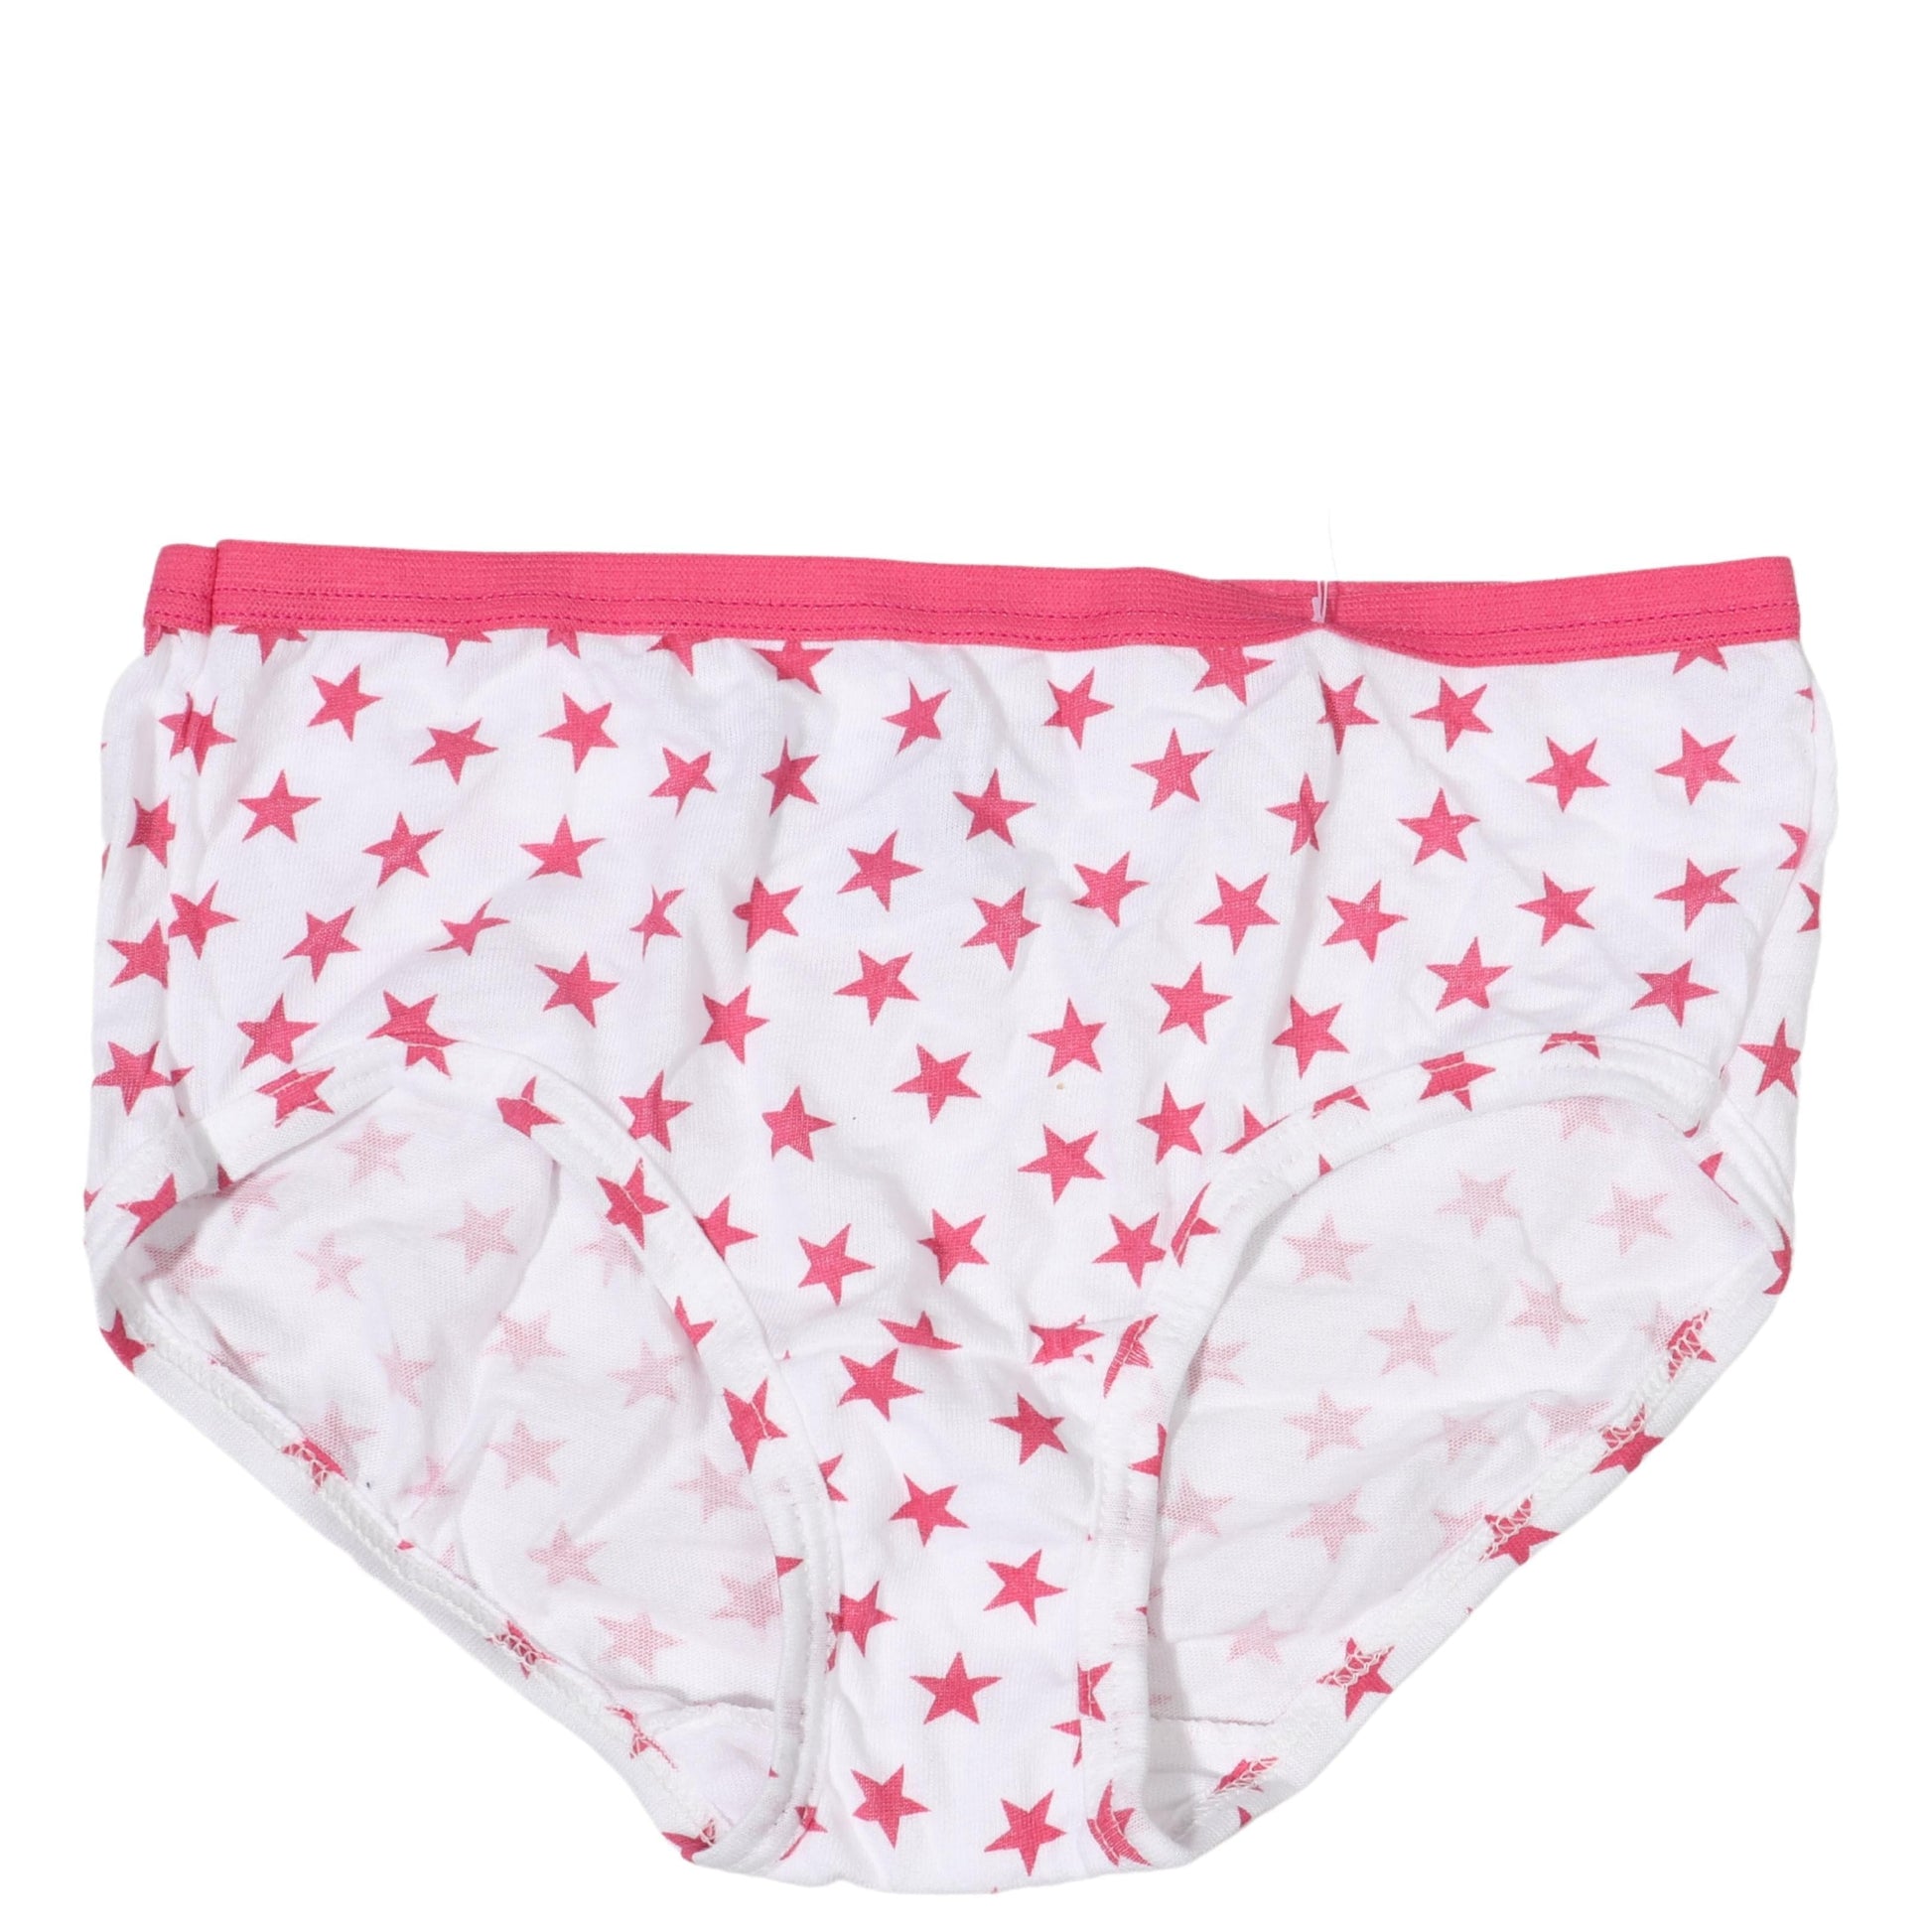 https://brandsandbeyond.me/cdn/shop/products/fruit-of-the-loom-girls-underwear-fruit-of-the-loom-kids-stars-printed-pantie-30262347563043.jpg?v=1657631479&width=1946